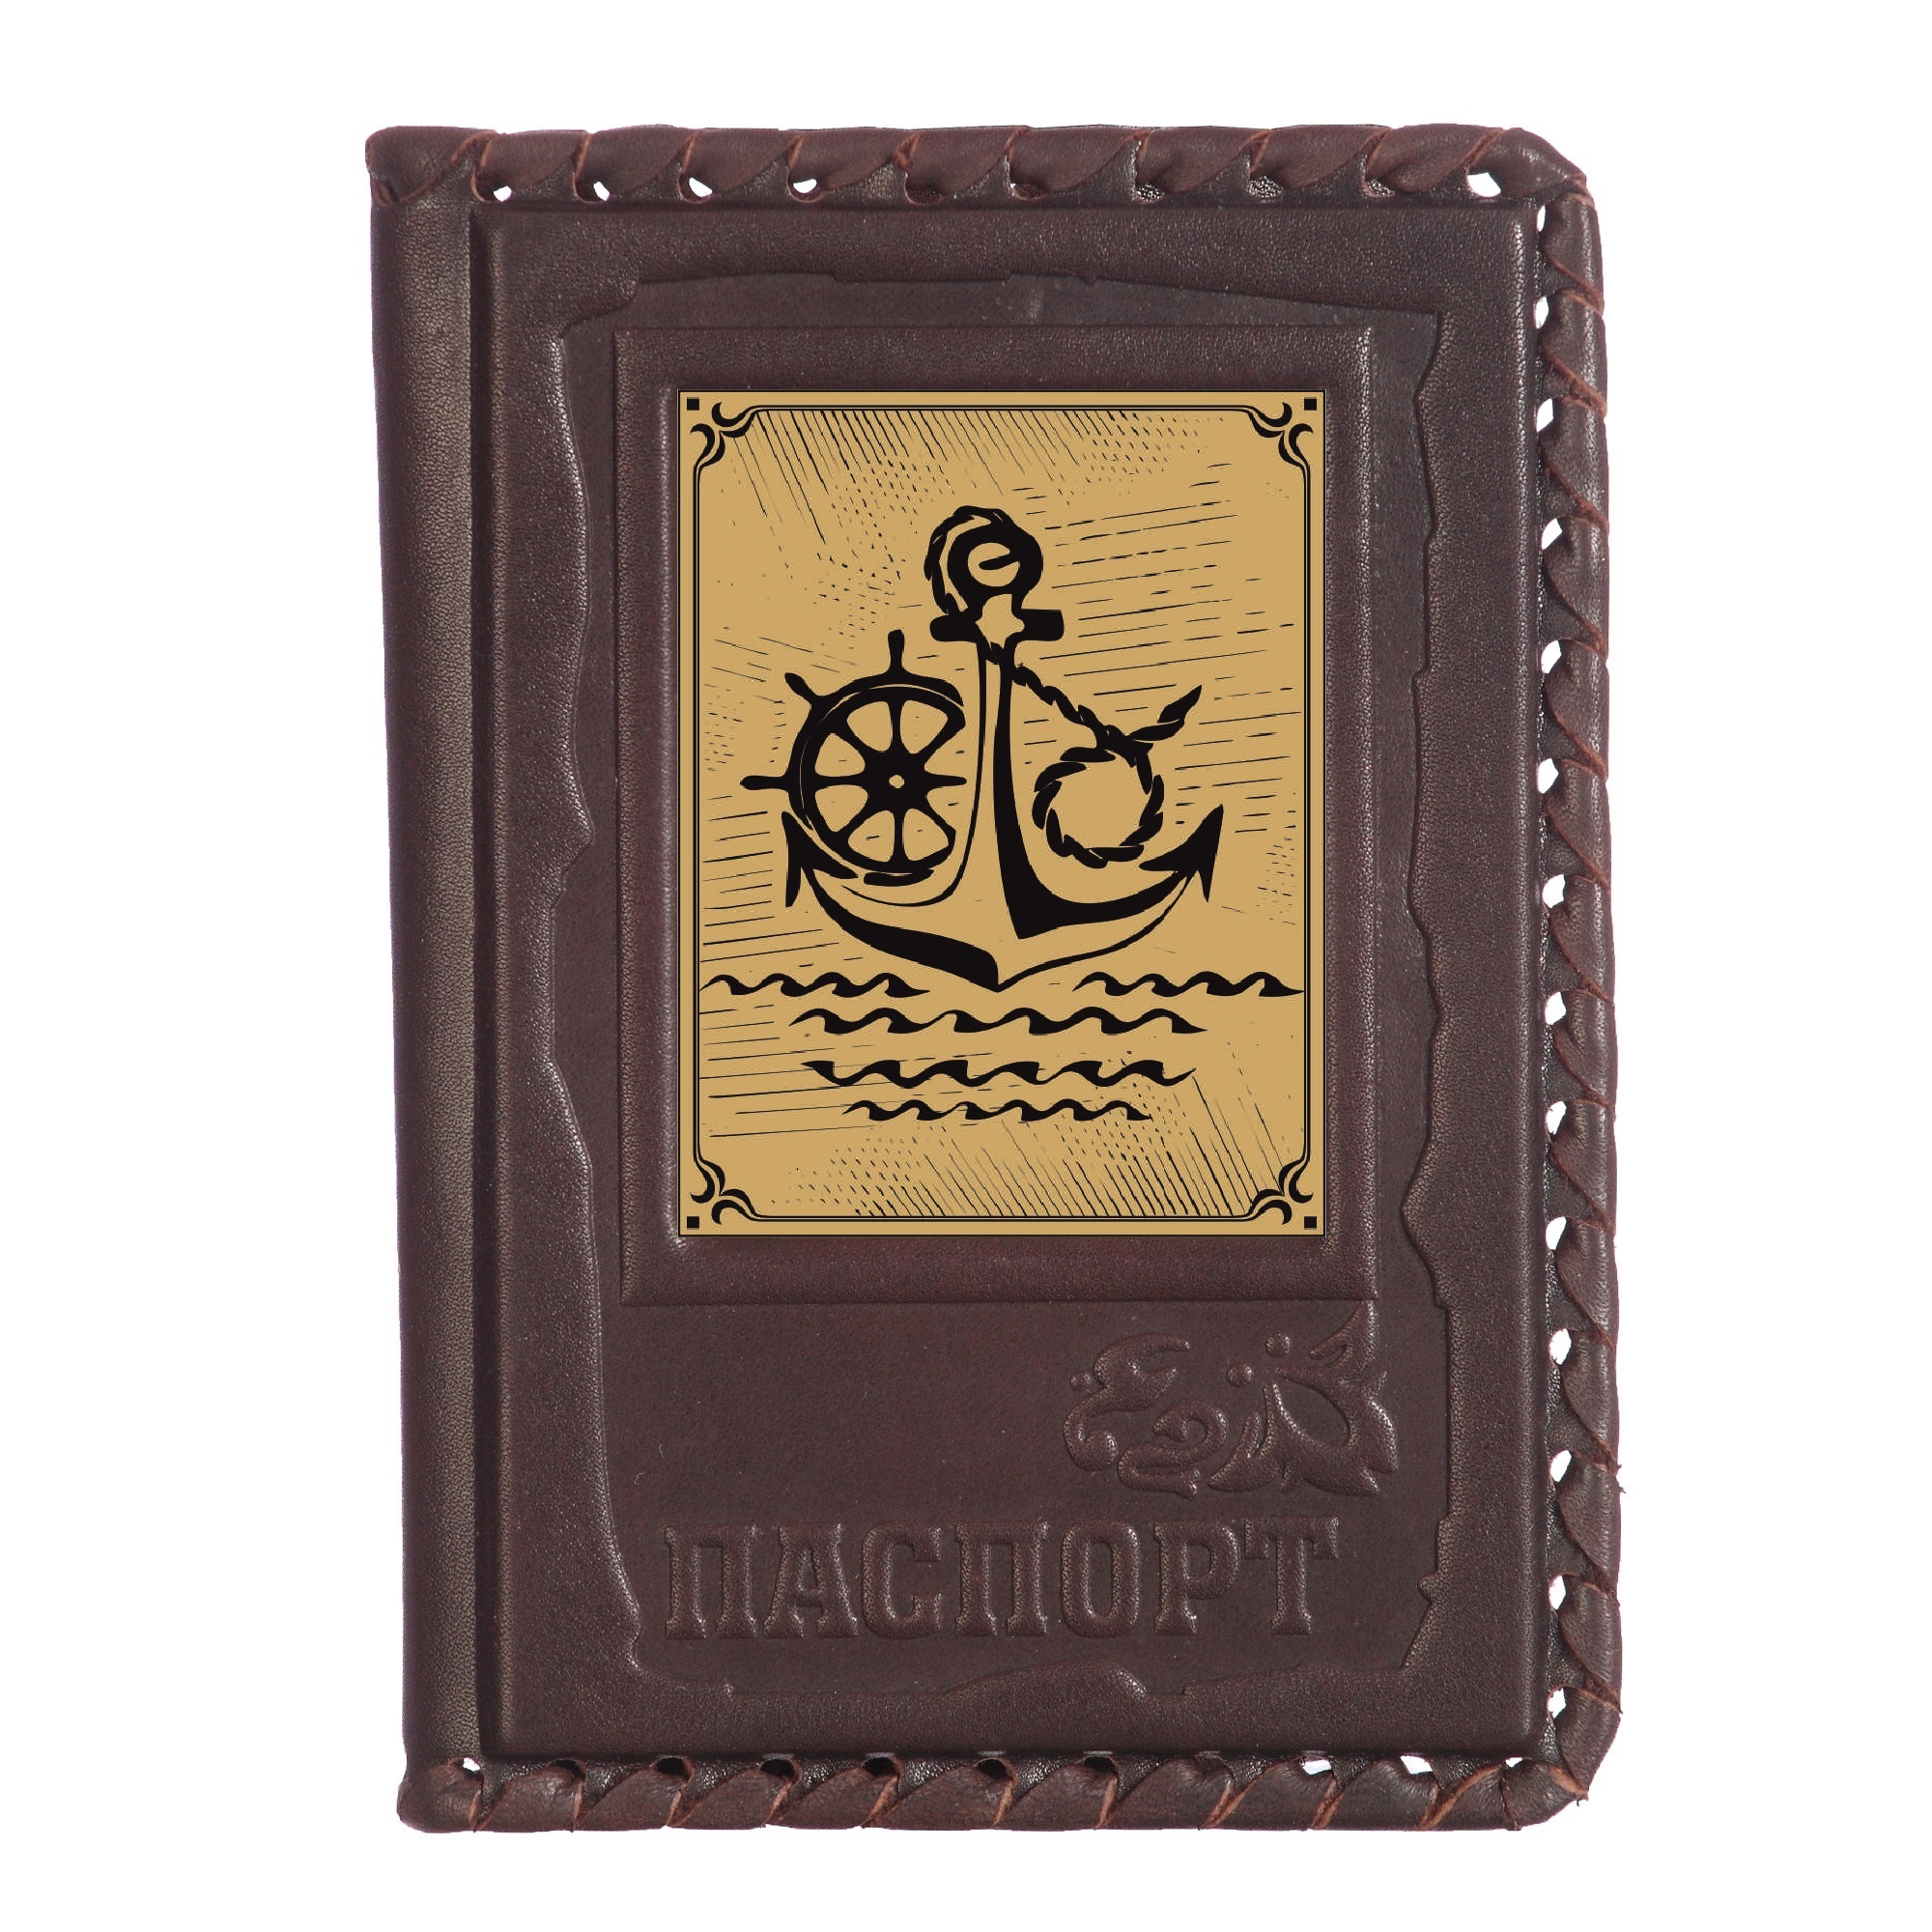 Обложка для паспорта Моряку-1 с сублимированной накладкой 009-18-61-26